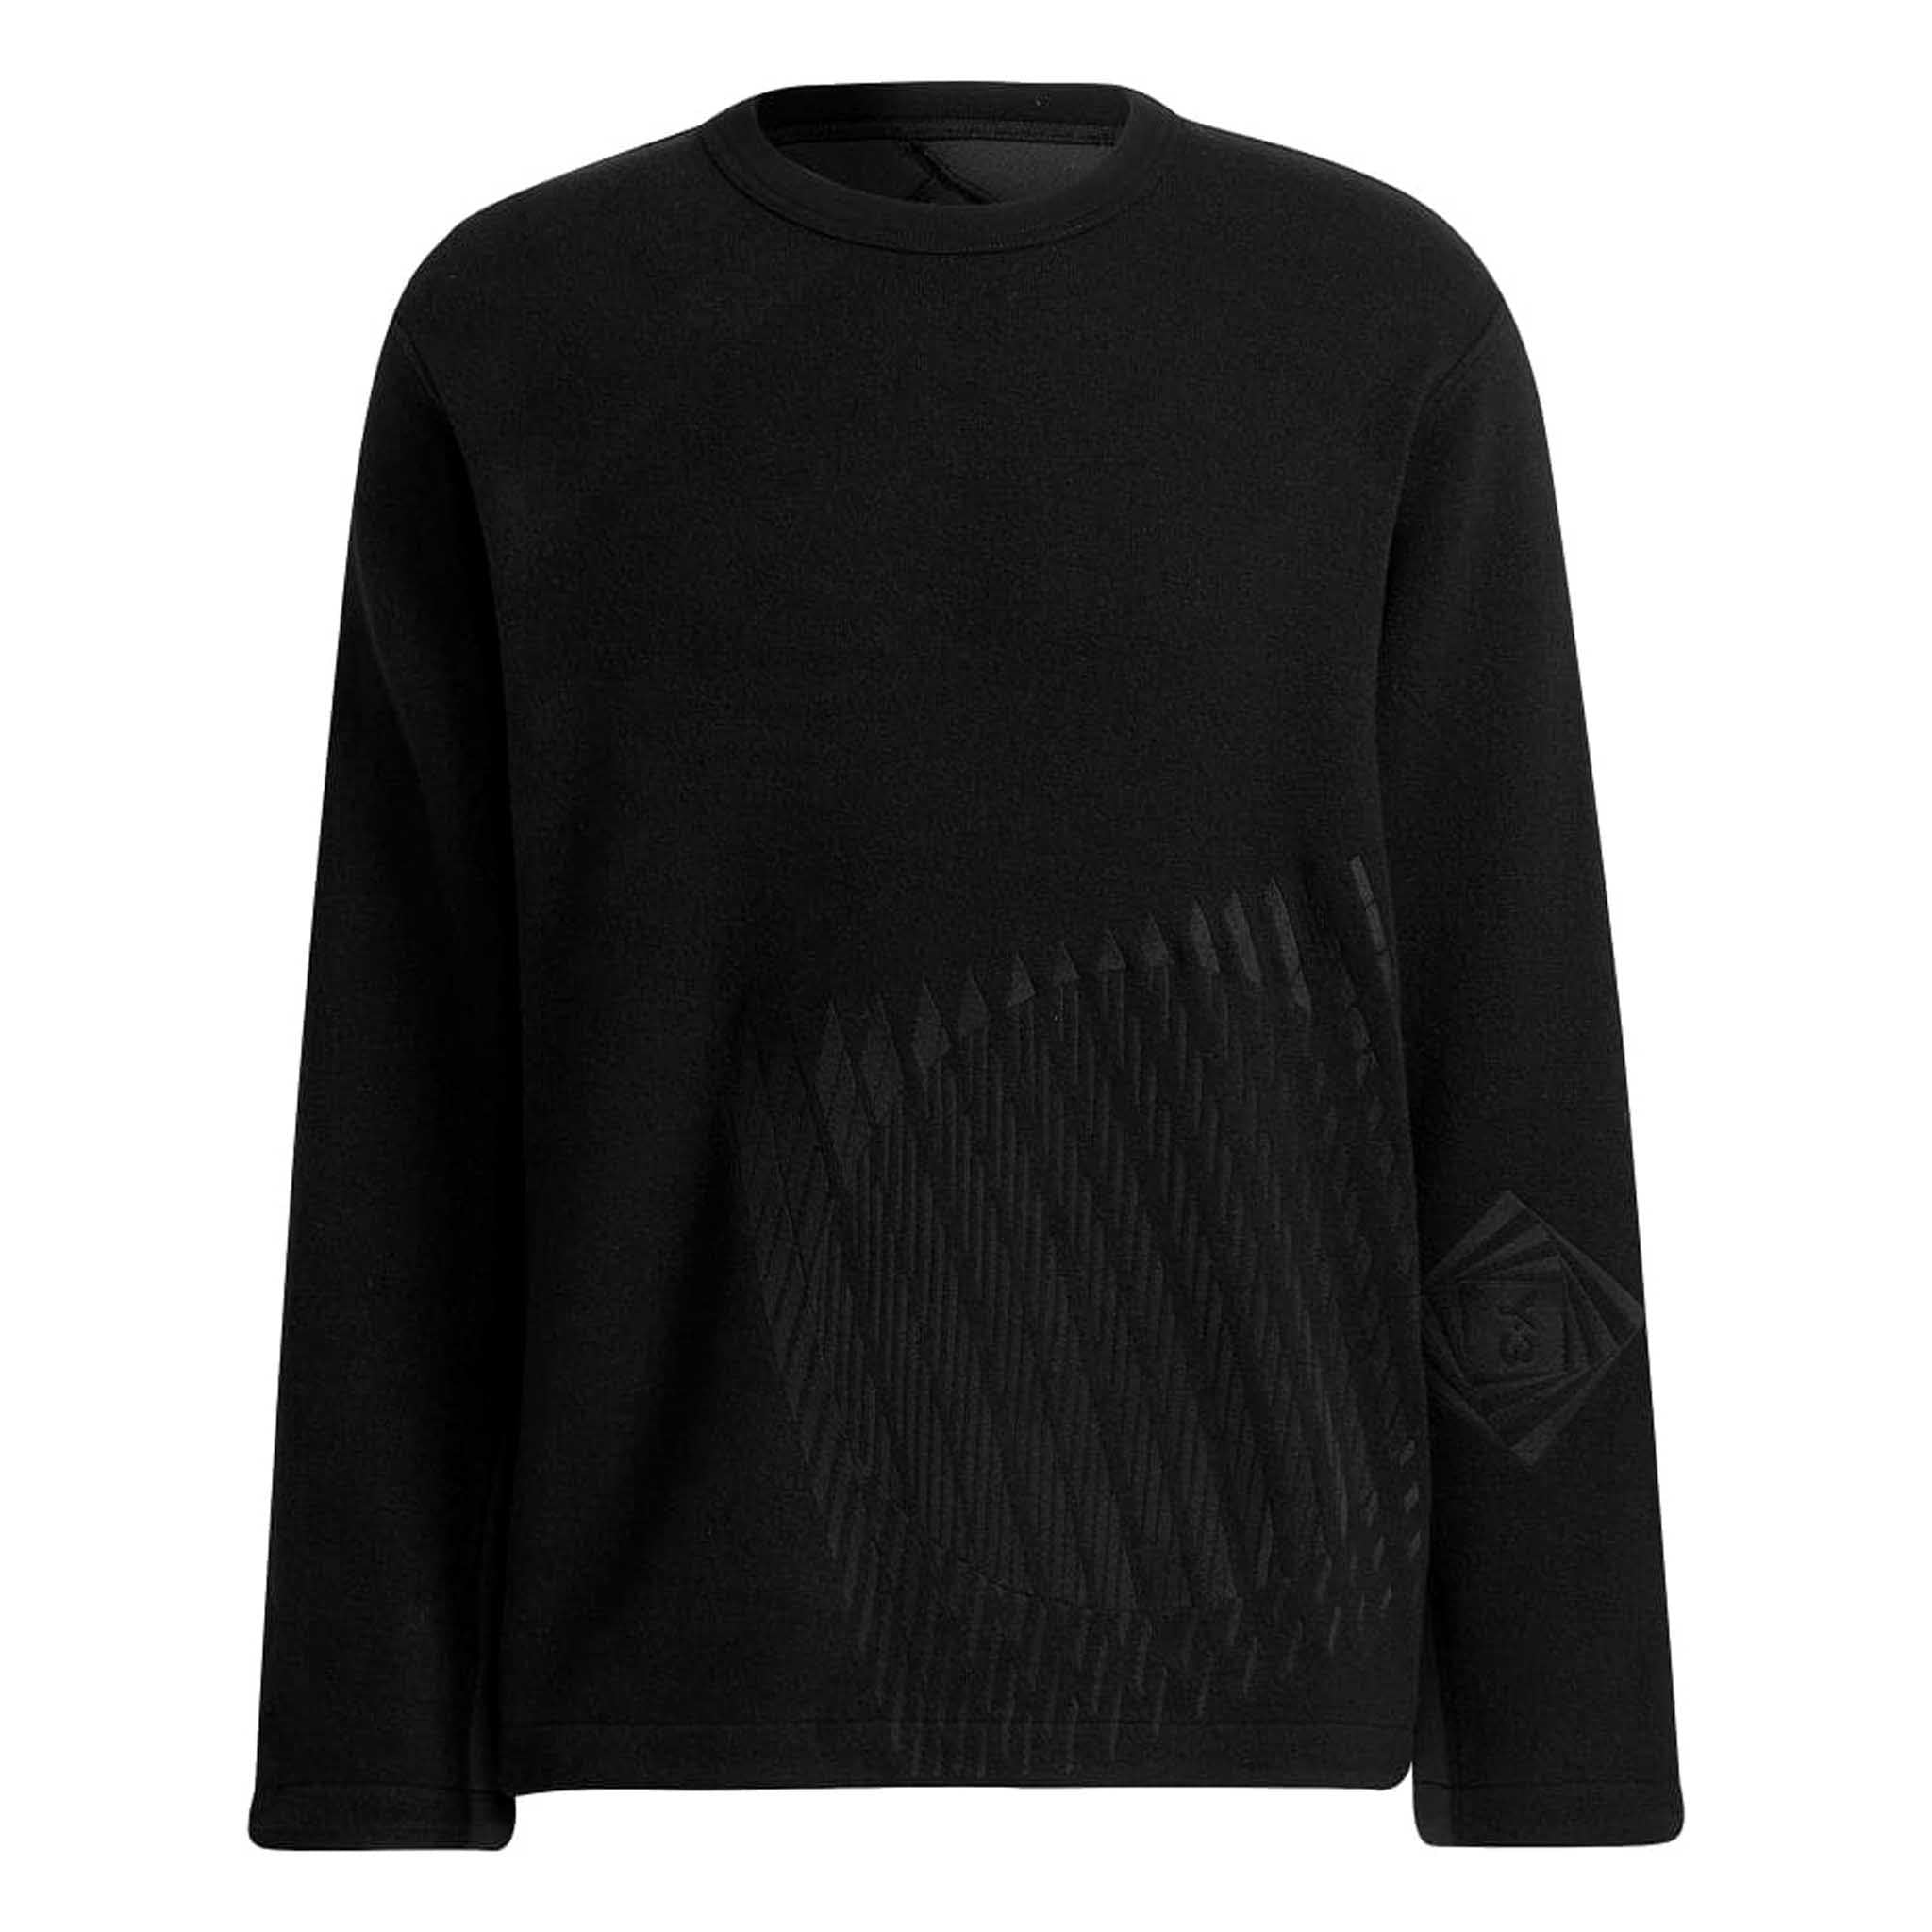 ADIDAS Y-3 CH1 Optimistic Illusions Sweatshirt Black